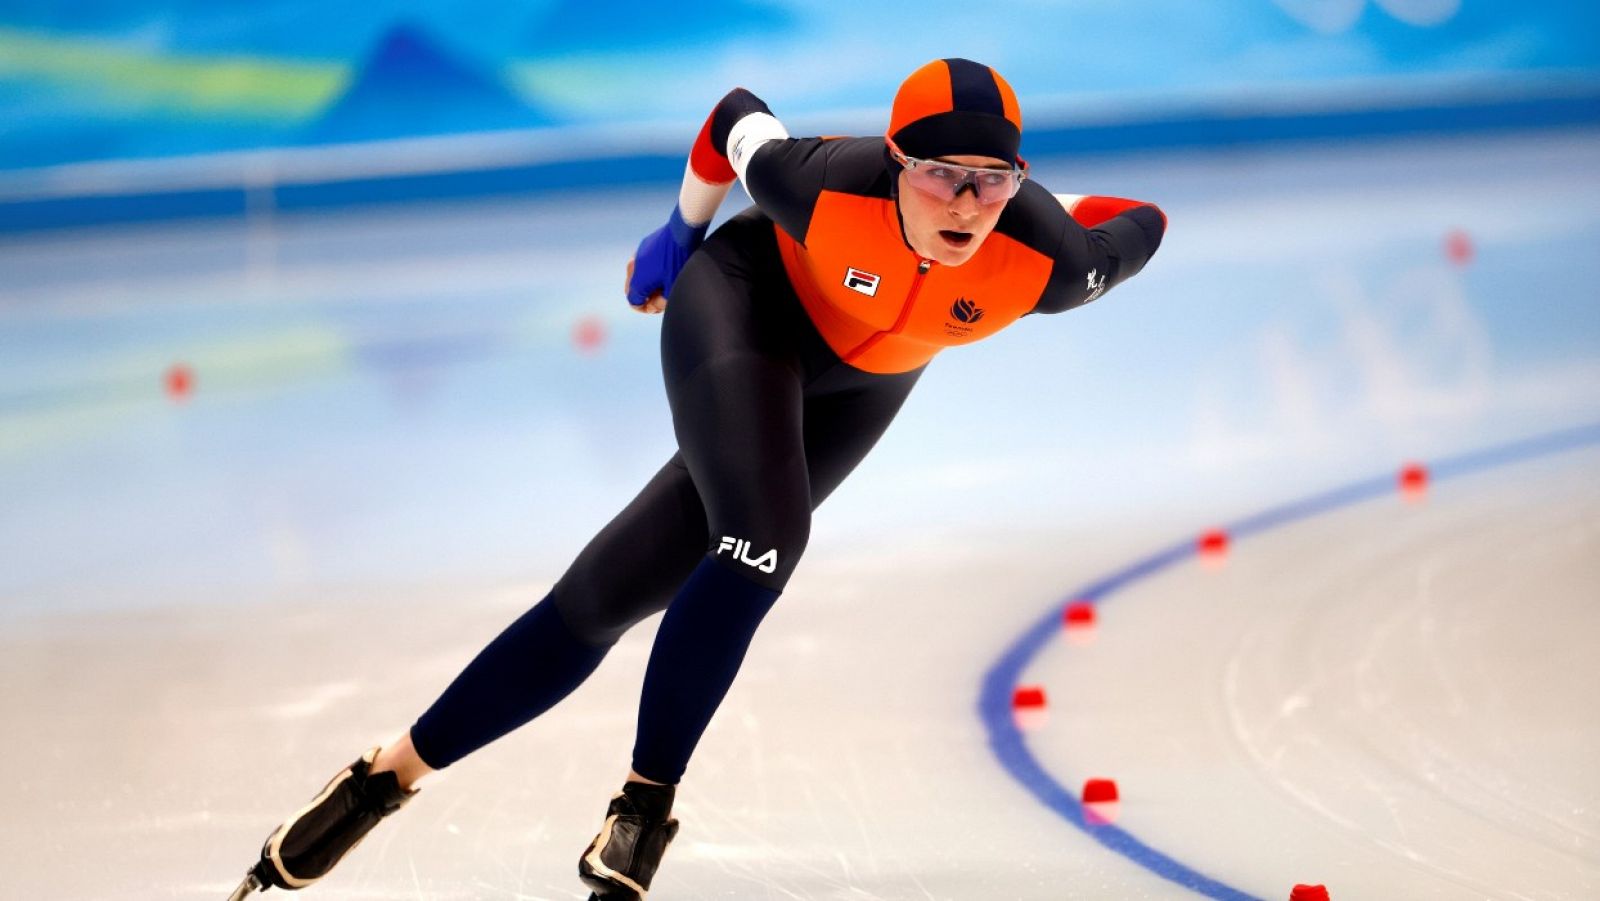 Imagen de la patinadora neerlandesa Irene Schouten en los Juegos Olímpicos de Pekín 2022.